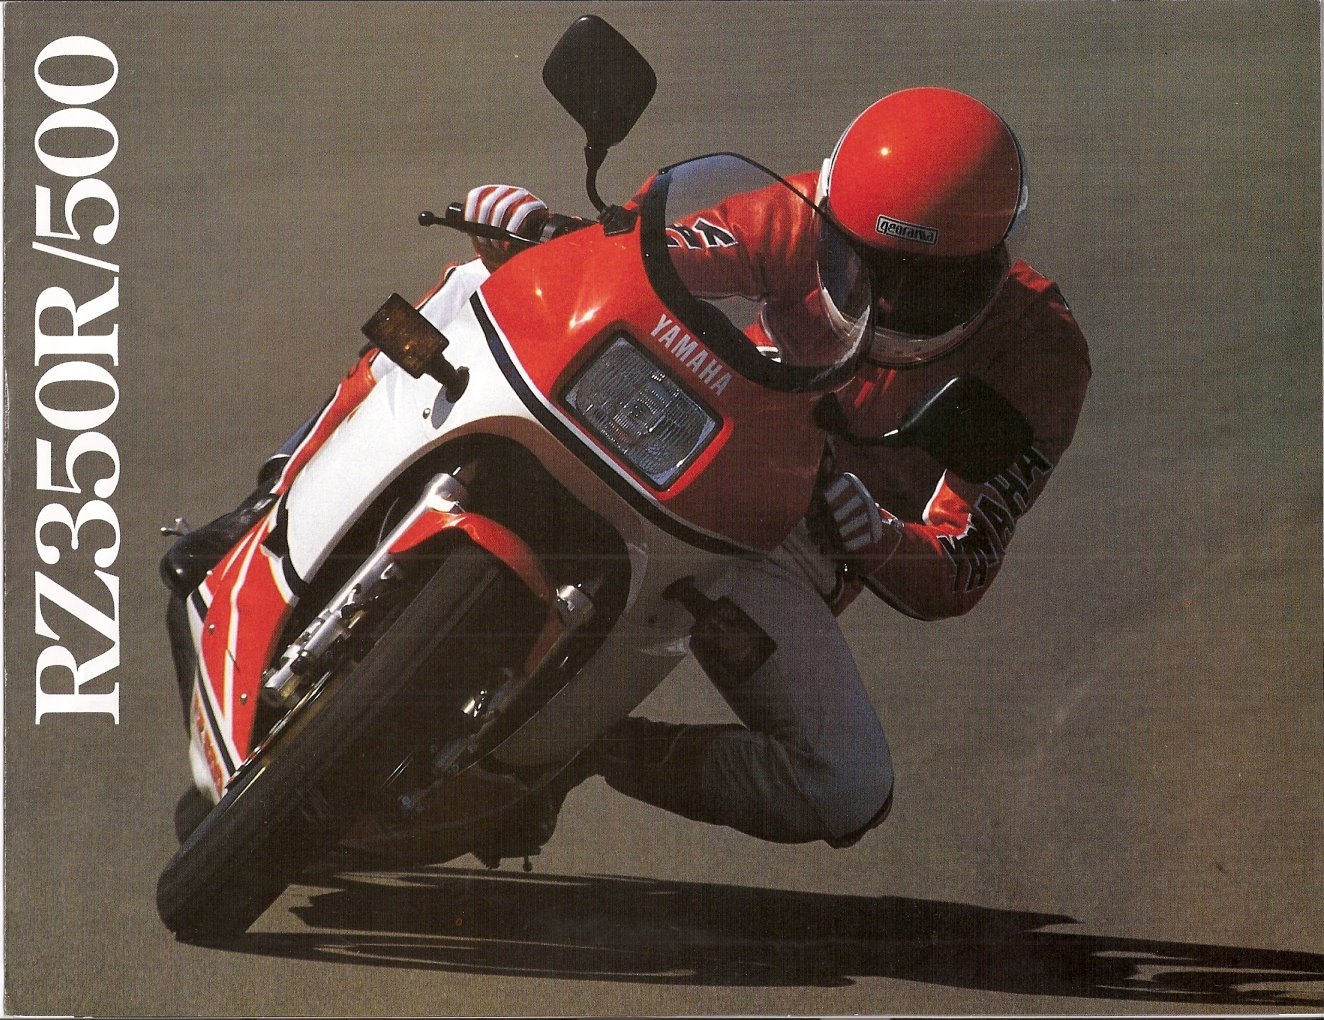 Мотоцикл Yamaha RZ 350 R 1985 фото